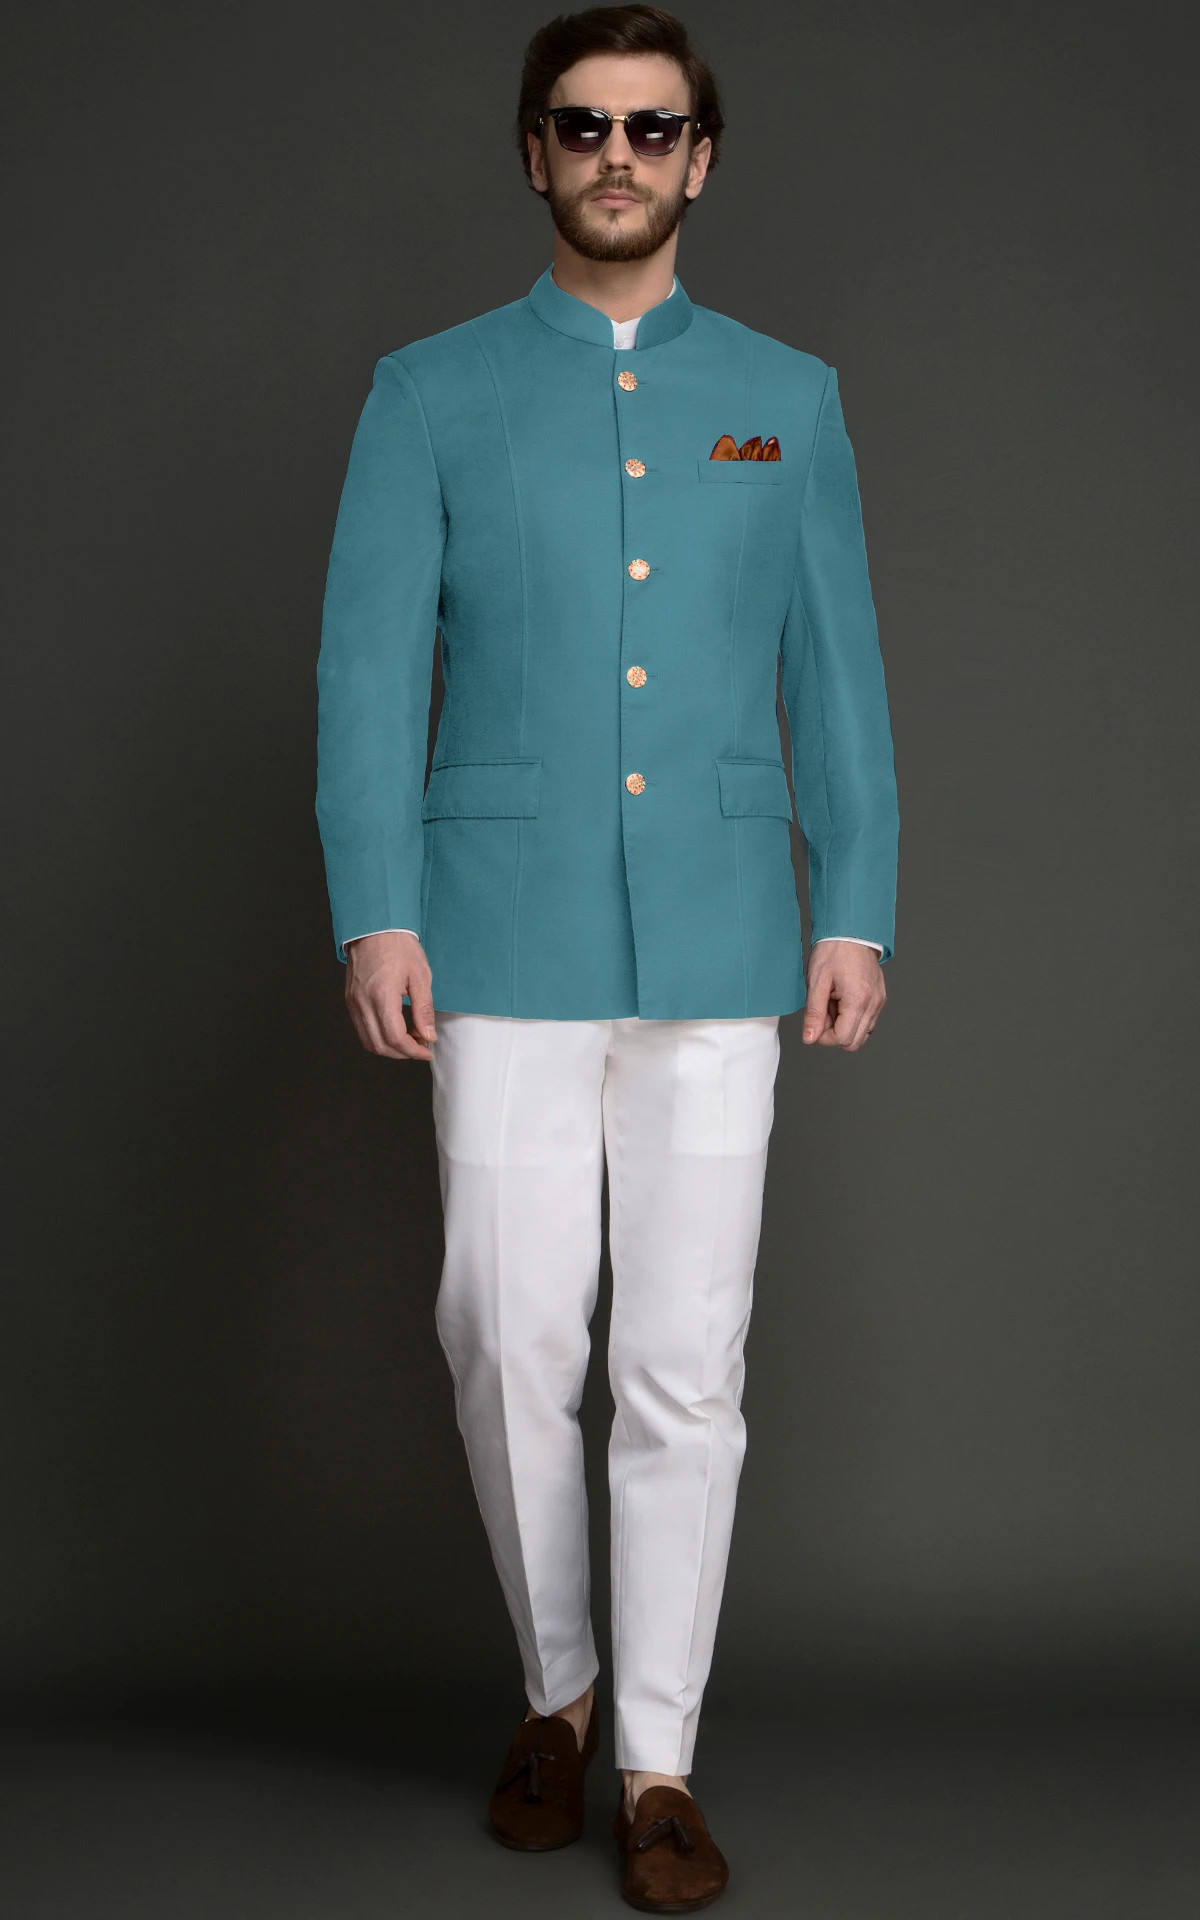 Attractive Sky Blue Jodhpuri Suit For Men